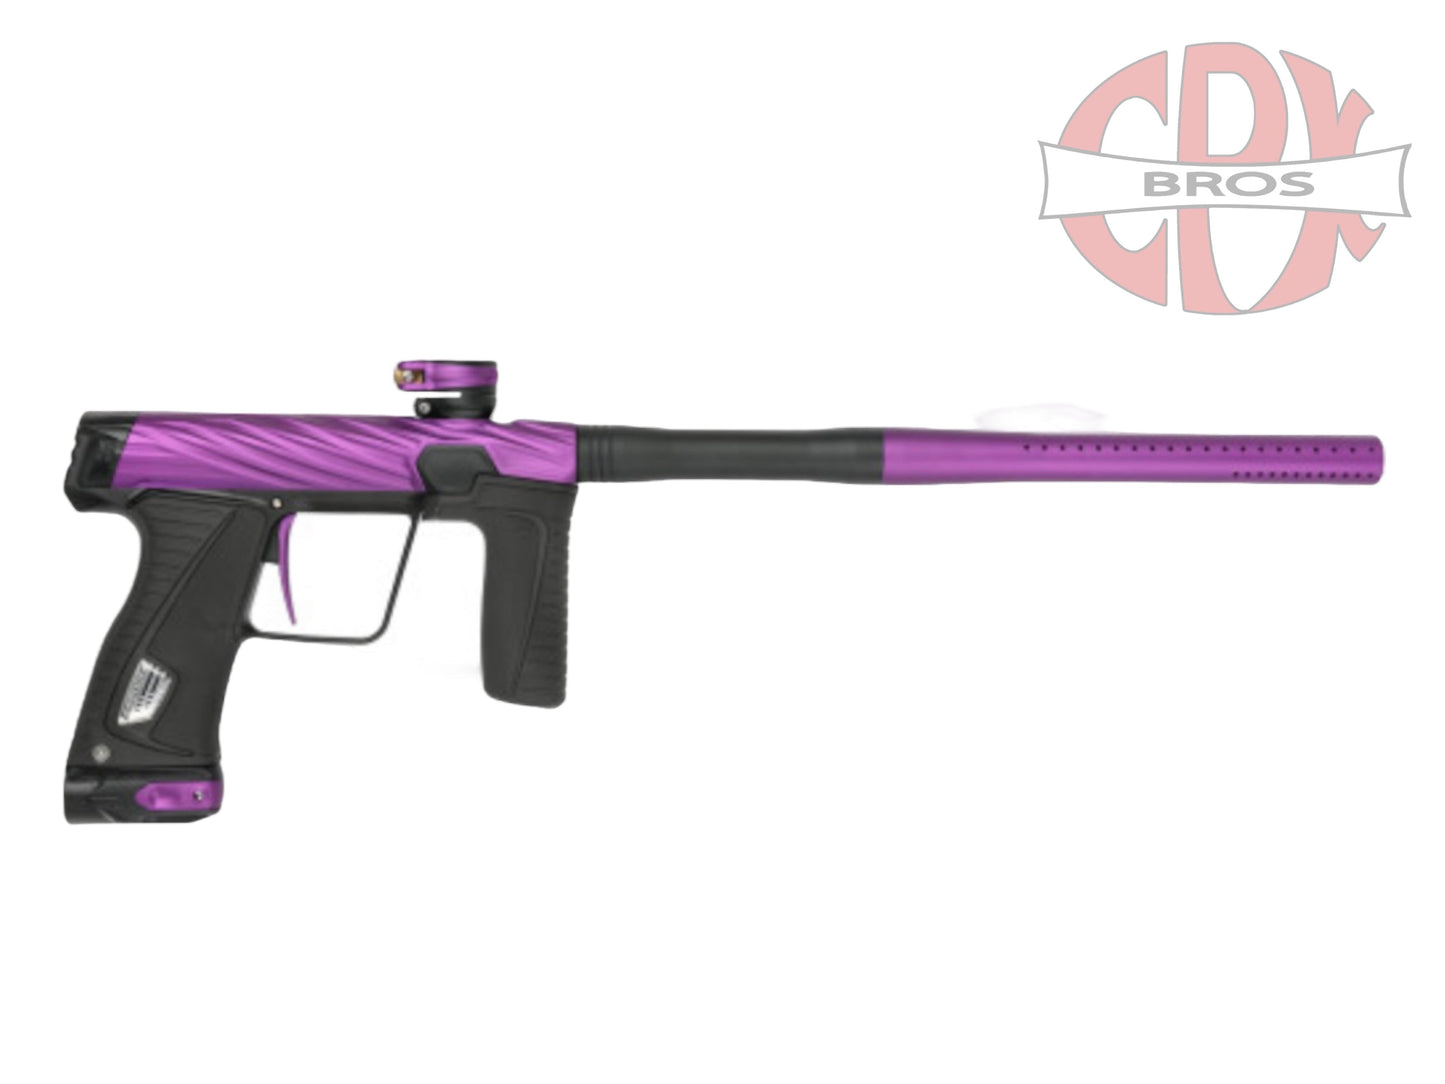 Used HK Army Orbit Gtek 180R- Purple/Black Paintball Gun from CPXBrosPaintball Buy/Sell/Trade Paintball Markers, Paintball Hoppers, Paintball Masks, and Hormesis Headbands